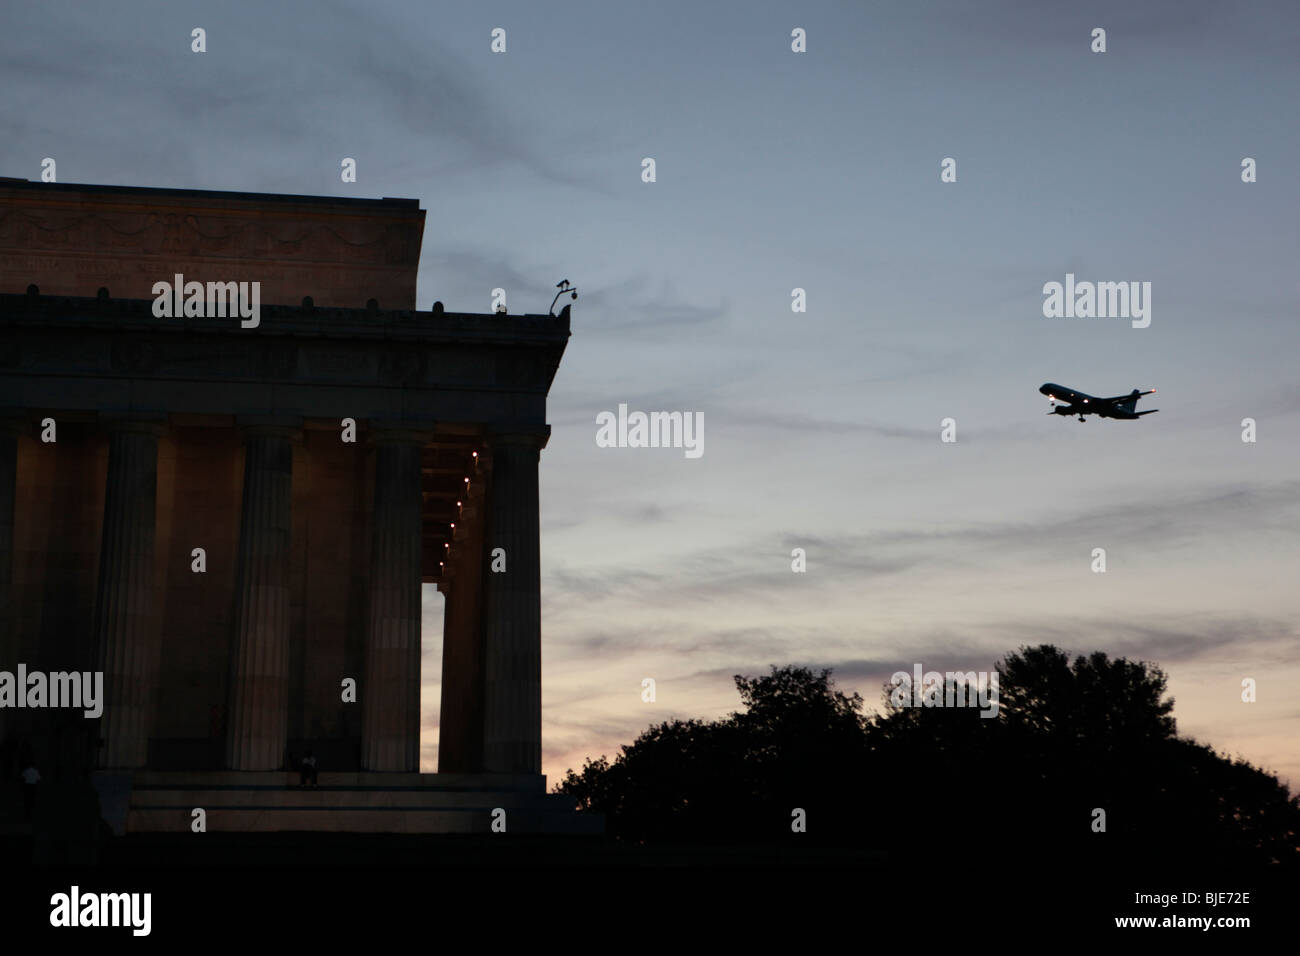 Un jet de passagers défile le Lincoln Memorial à Washington D.C. Voyage destinations tourisme transport compagnies aériennes nuit crépuscule décollage arrivée Banque D'Images